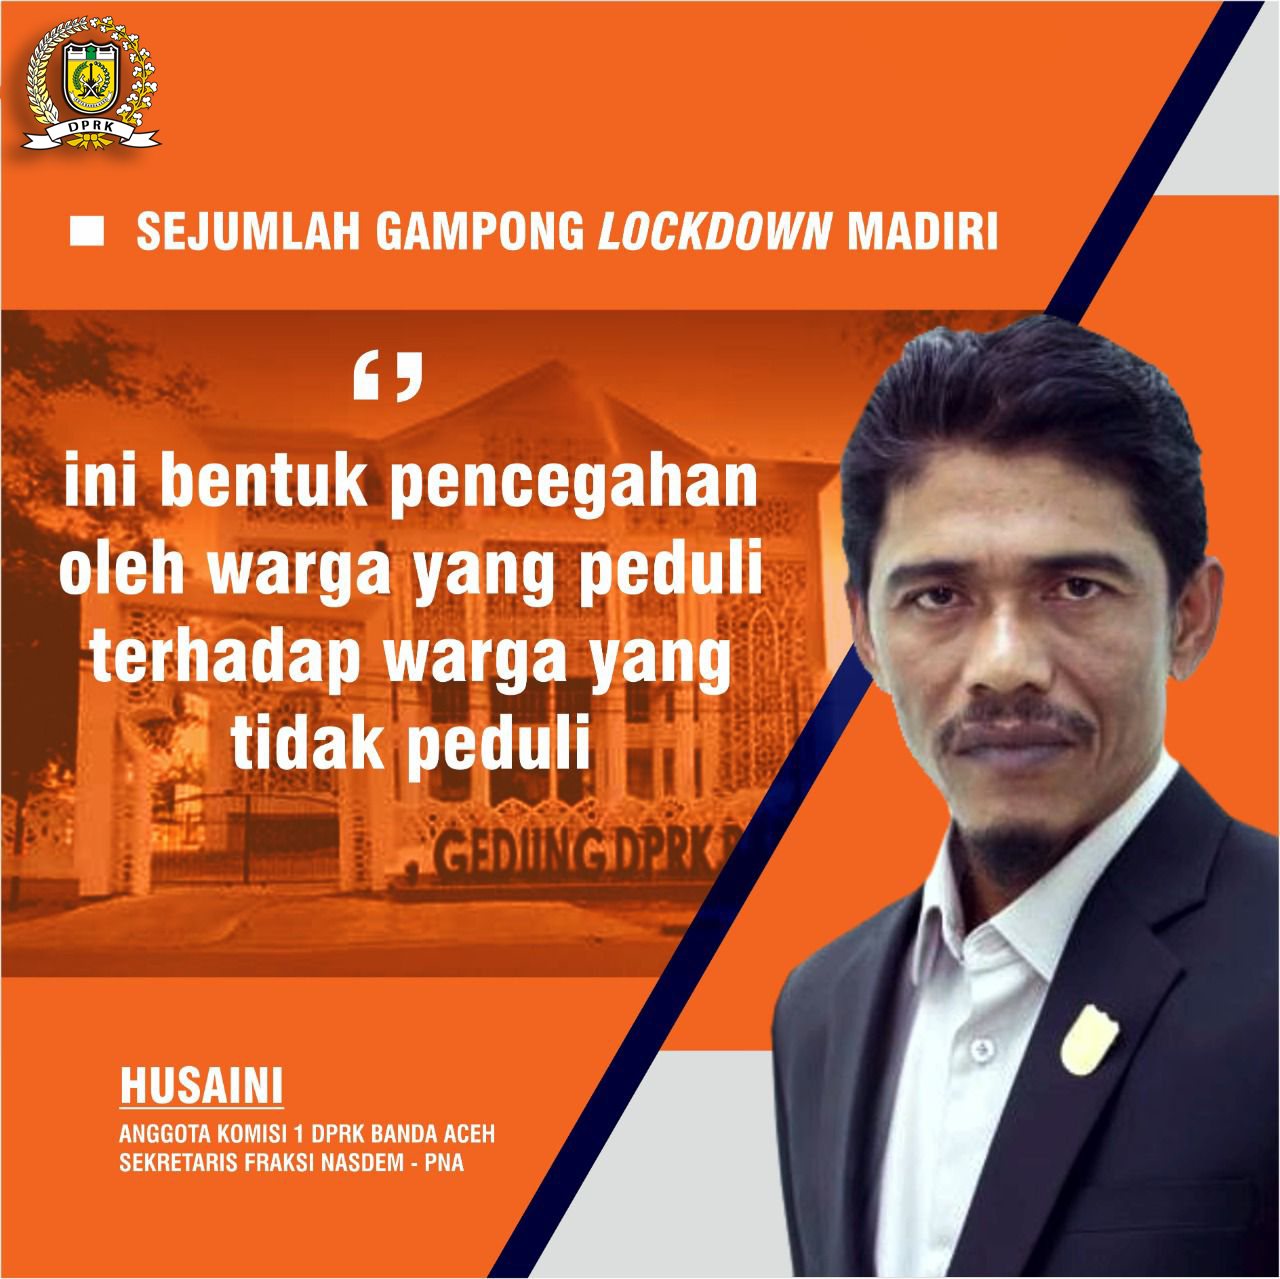 Sejumlah Gampong Di Banda Aceh “Lockdown” Diri, Husaini Dukung Semua Gampong Di Sembilan Kecamatan Ikut Menerapkan